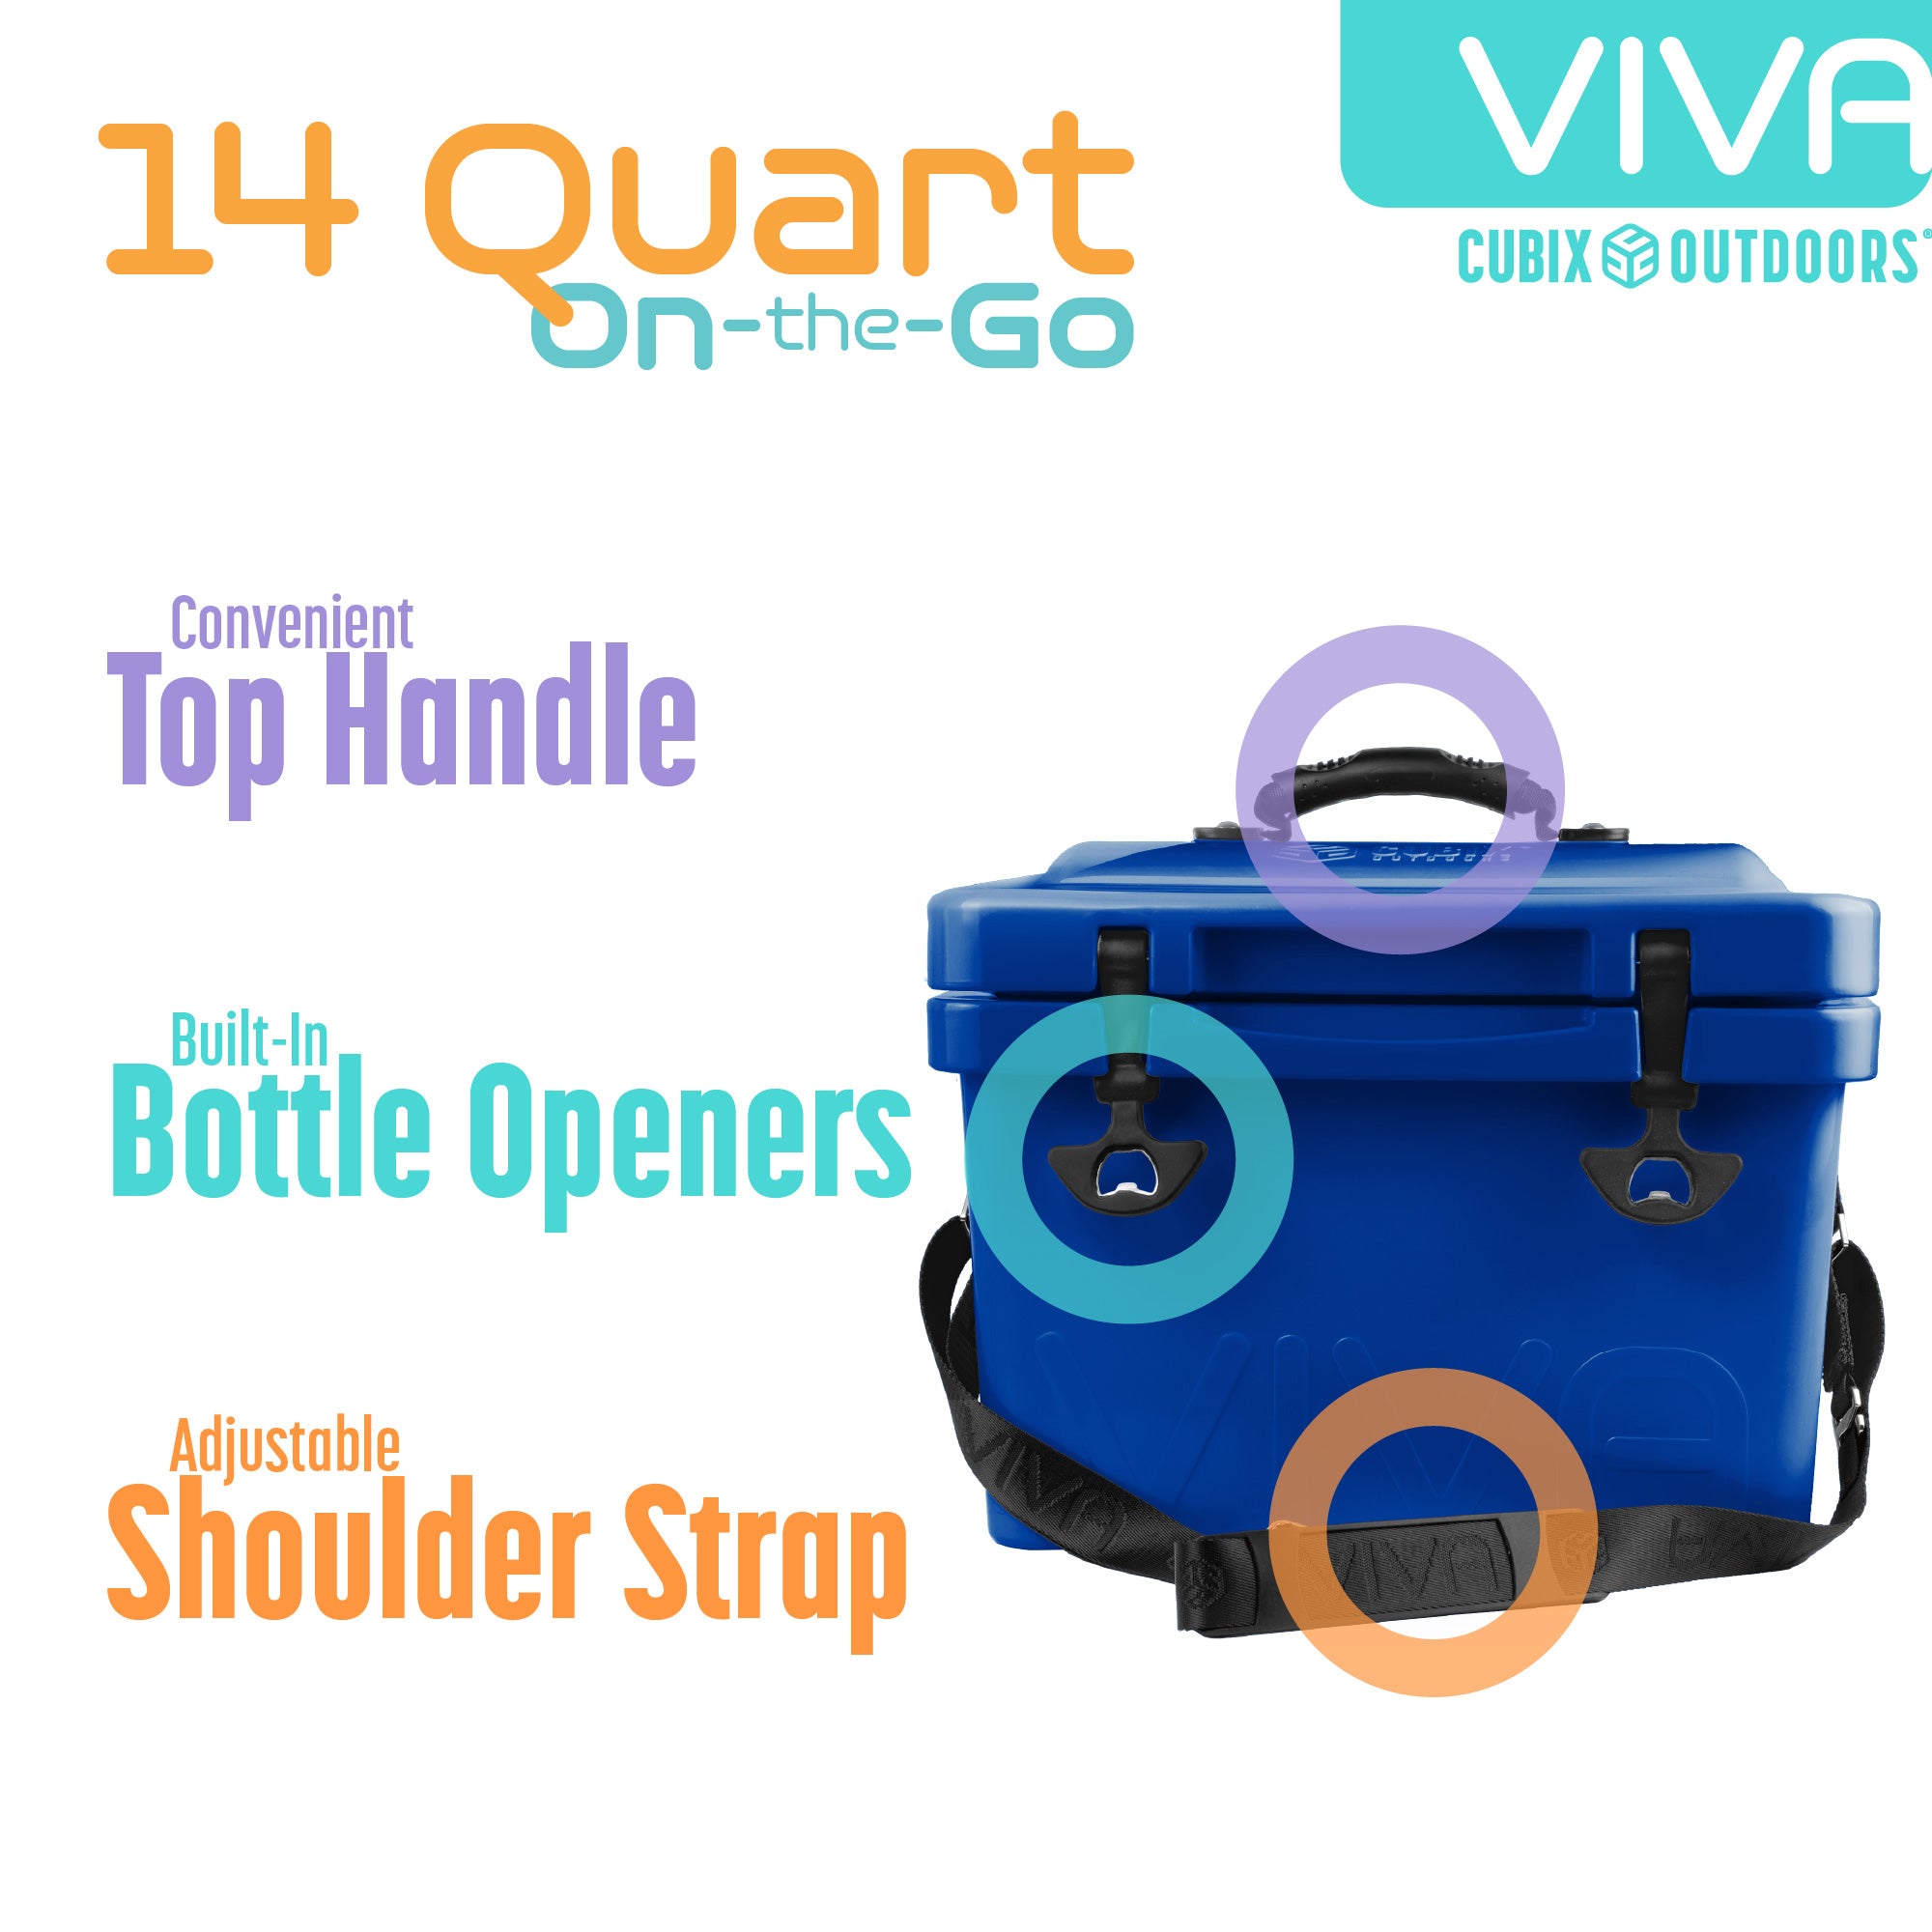 Cubix Outdoors 10 qt Quadrax Rotomolded Portable Hard Cooler, Fits 8 Cans, Abyss Blue, Size: 10 Quarts